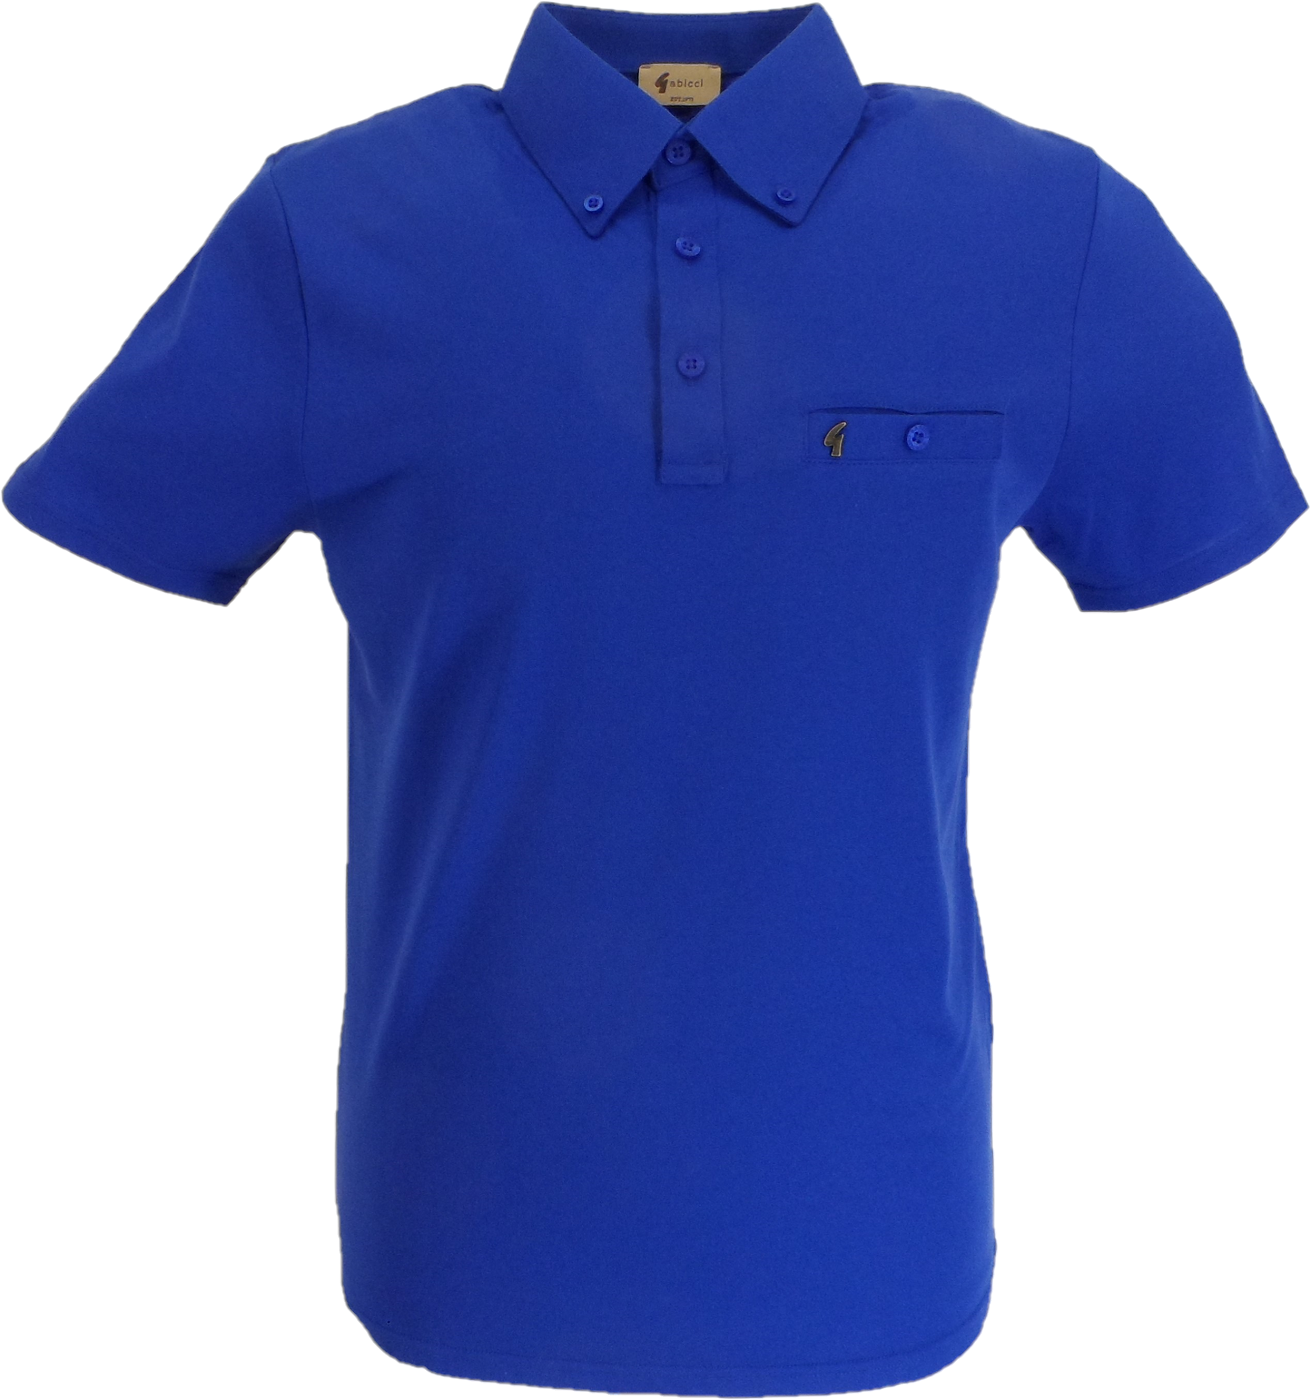 Gabicci Vintage Mens Thames Blue Ladro Polo Shirt